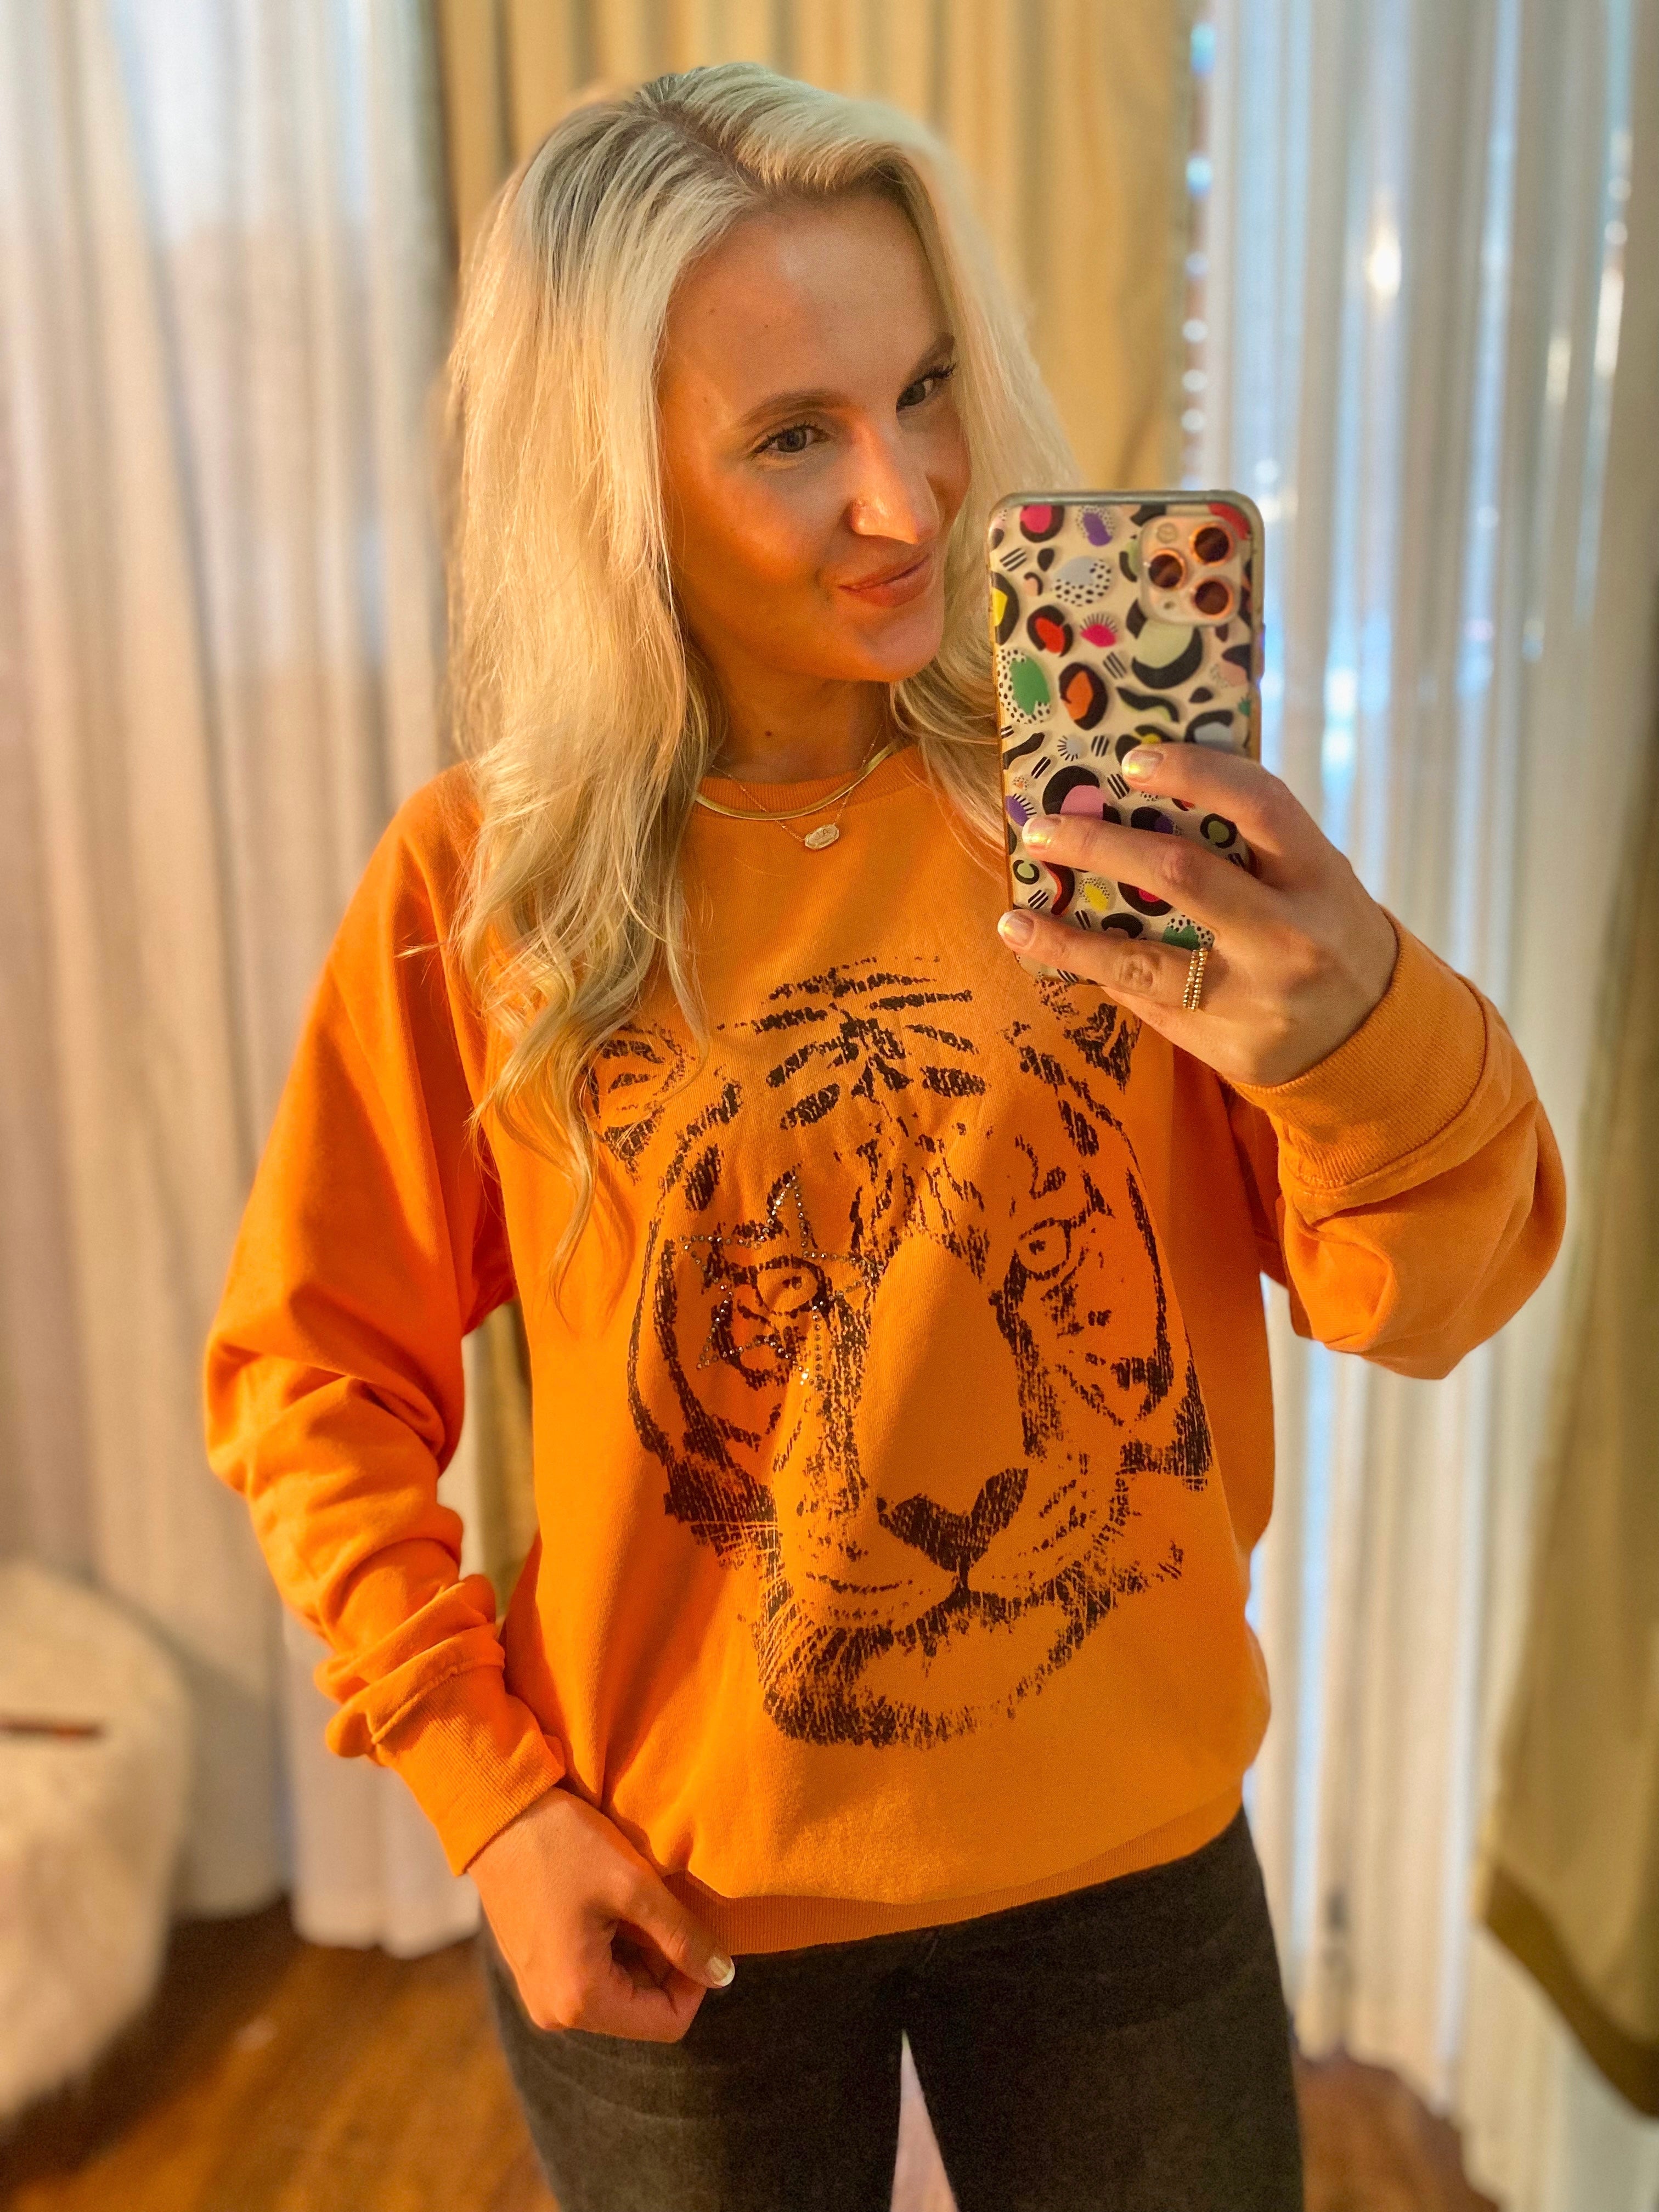 Take Down Orange Tiger Graphic Sweatshirt